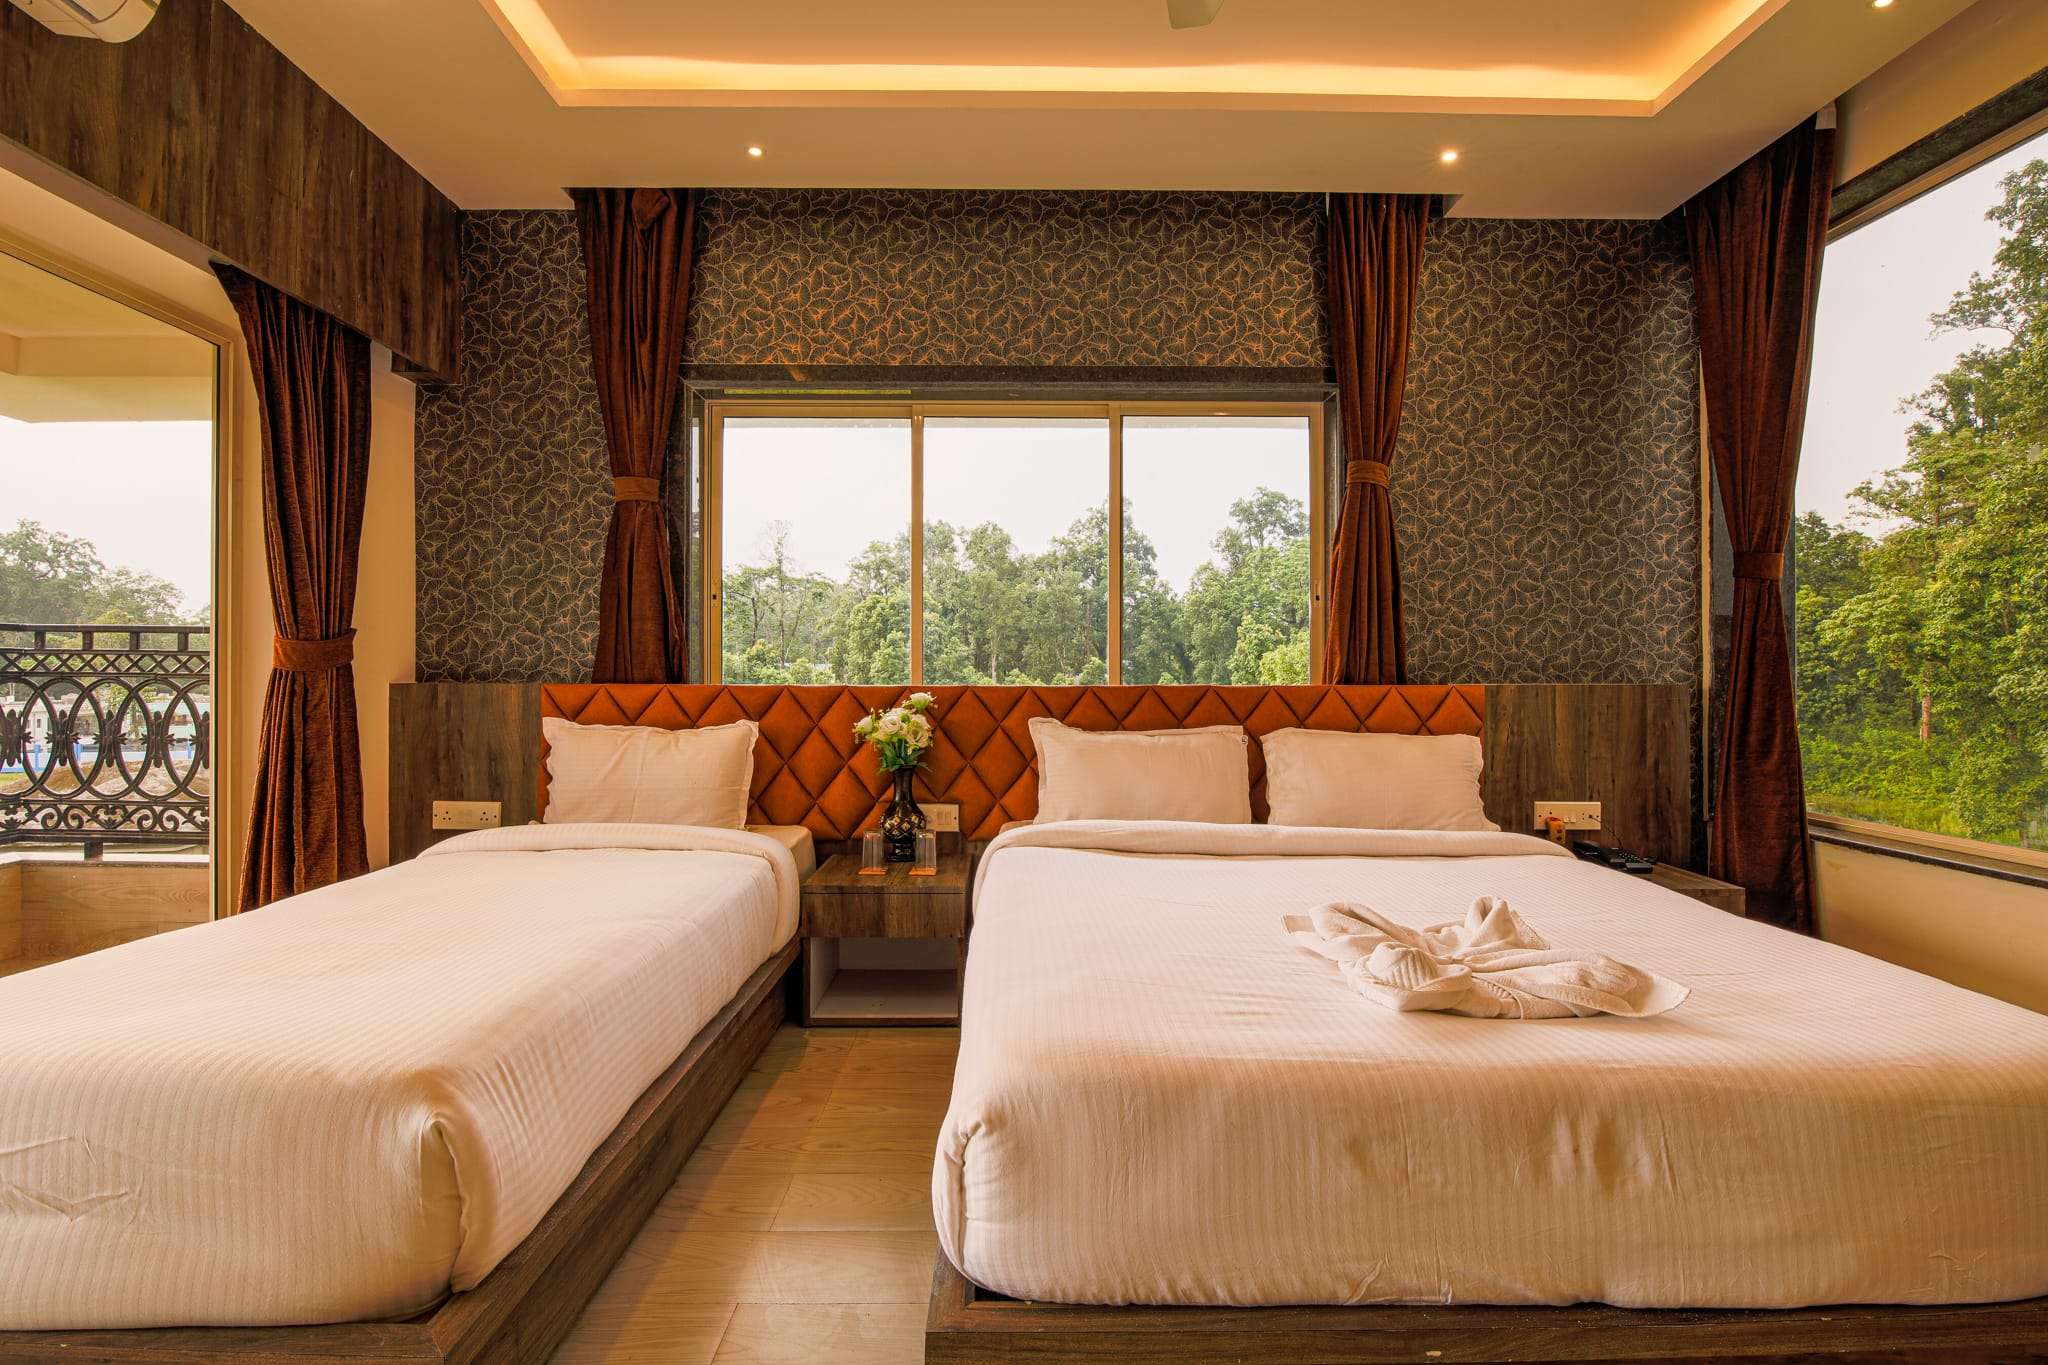 Triple bedroom in the luxurious resort in dooars